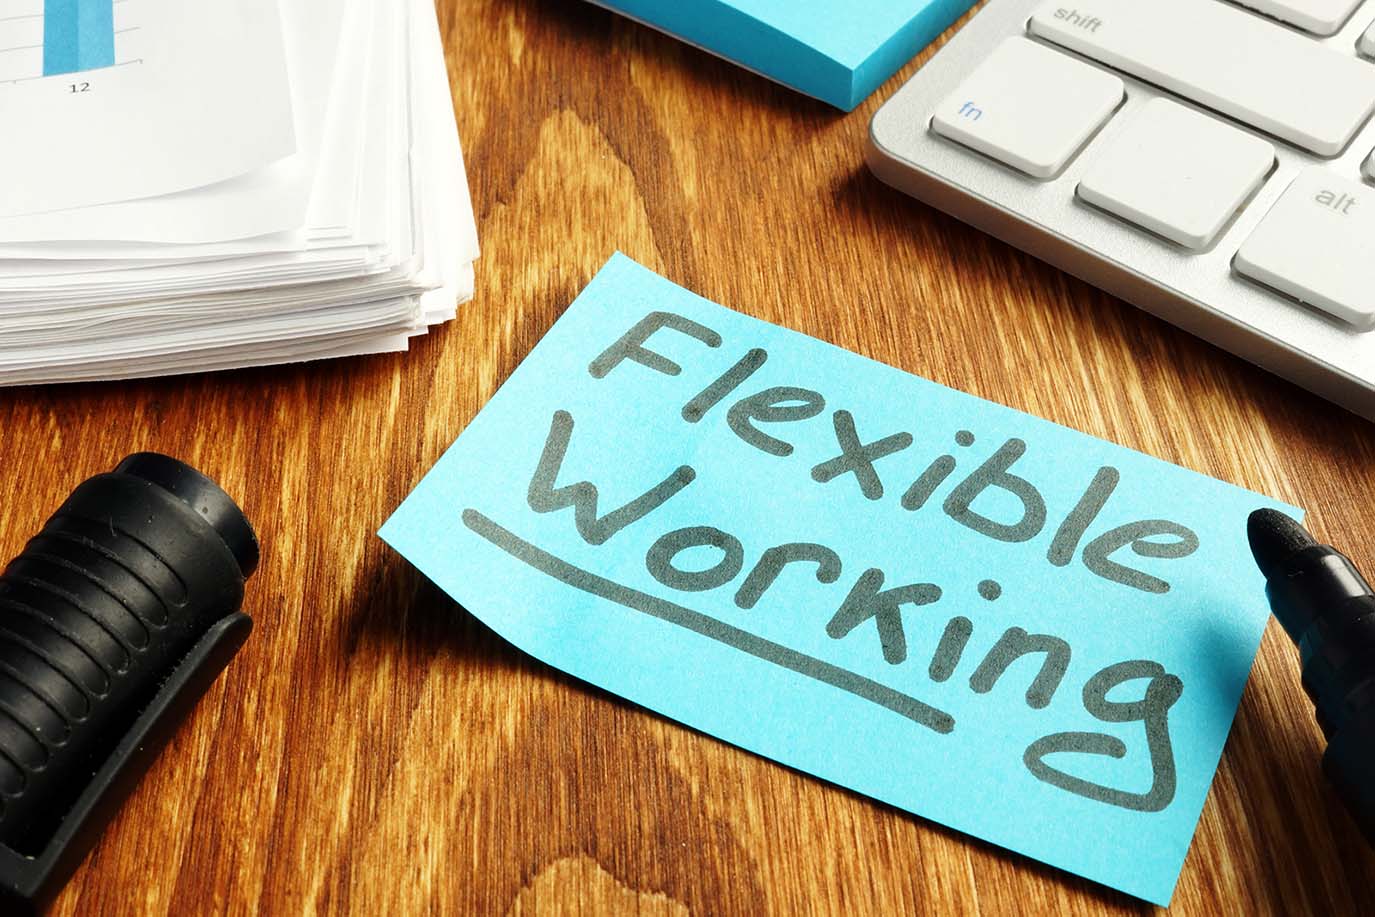 Flexible Working written on a post it note